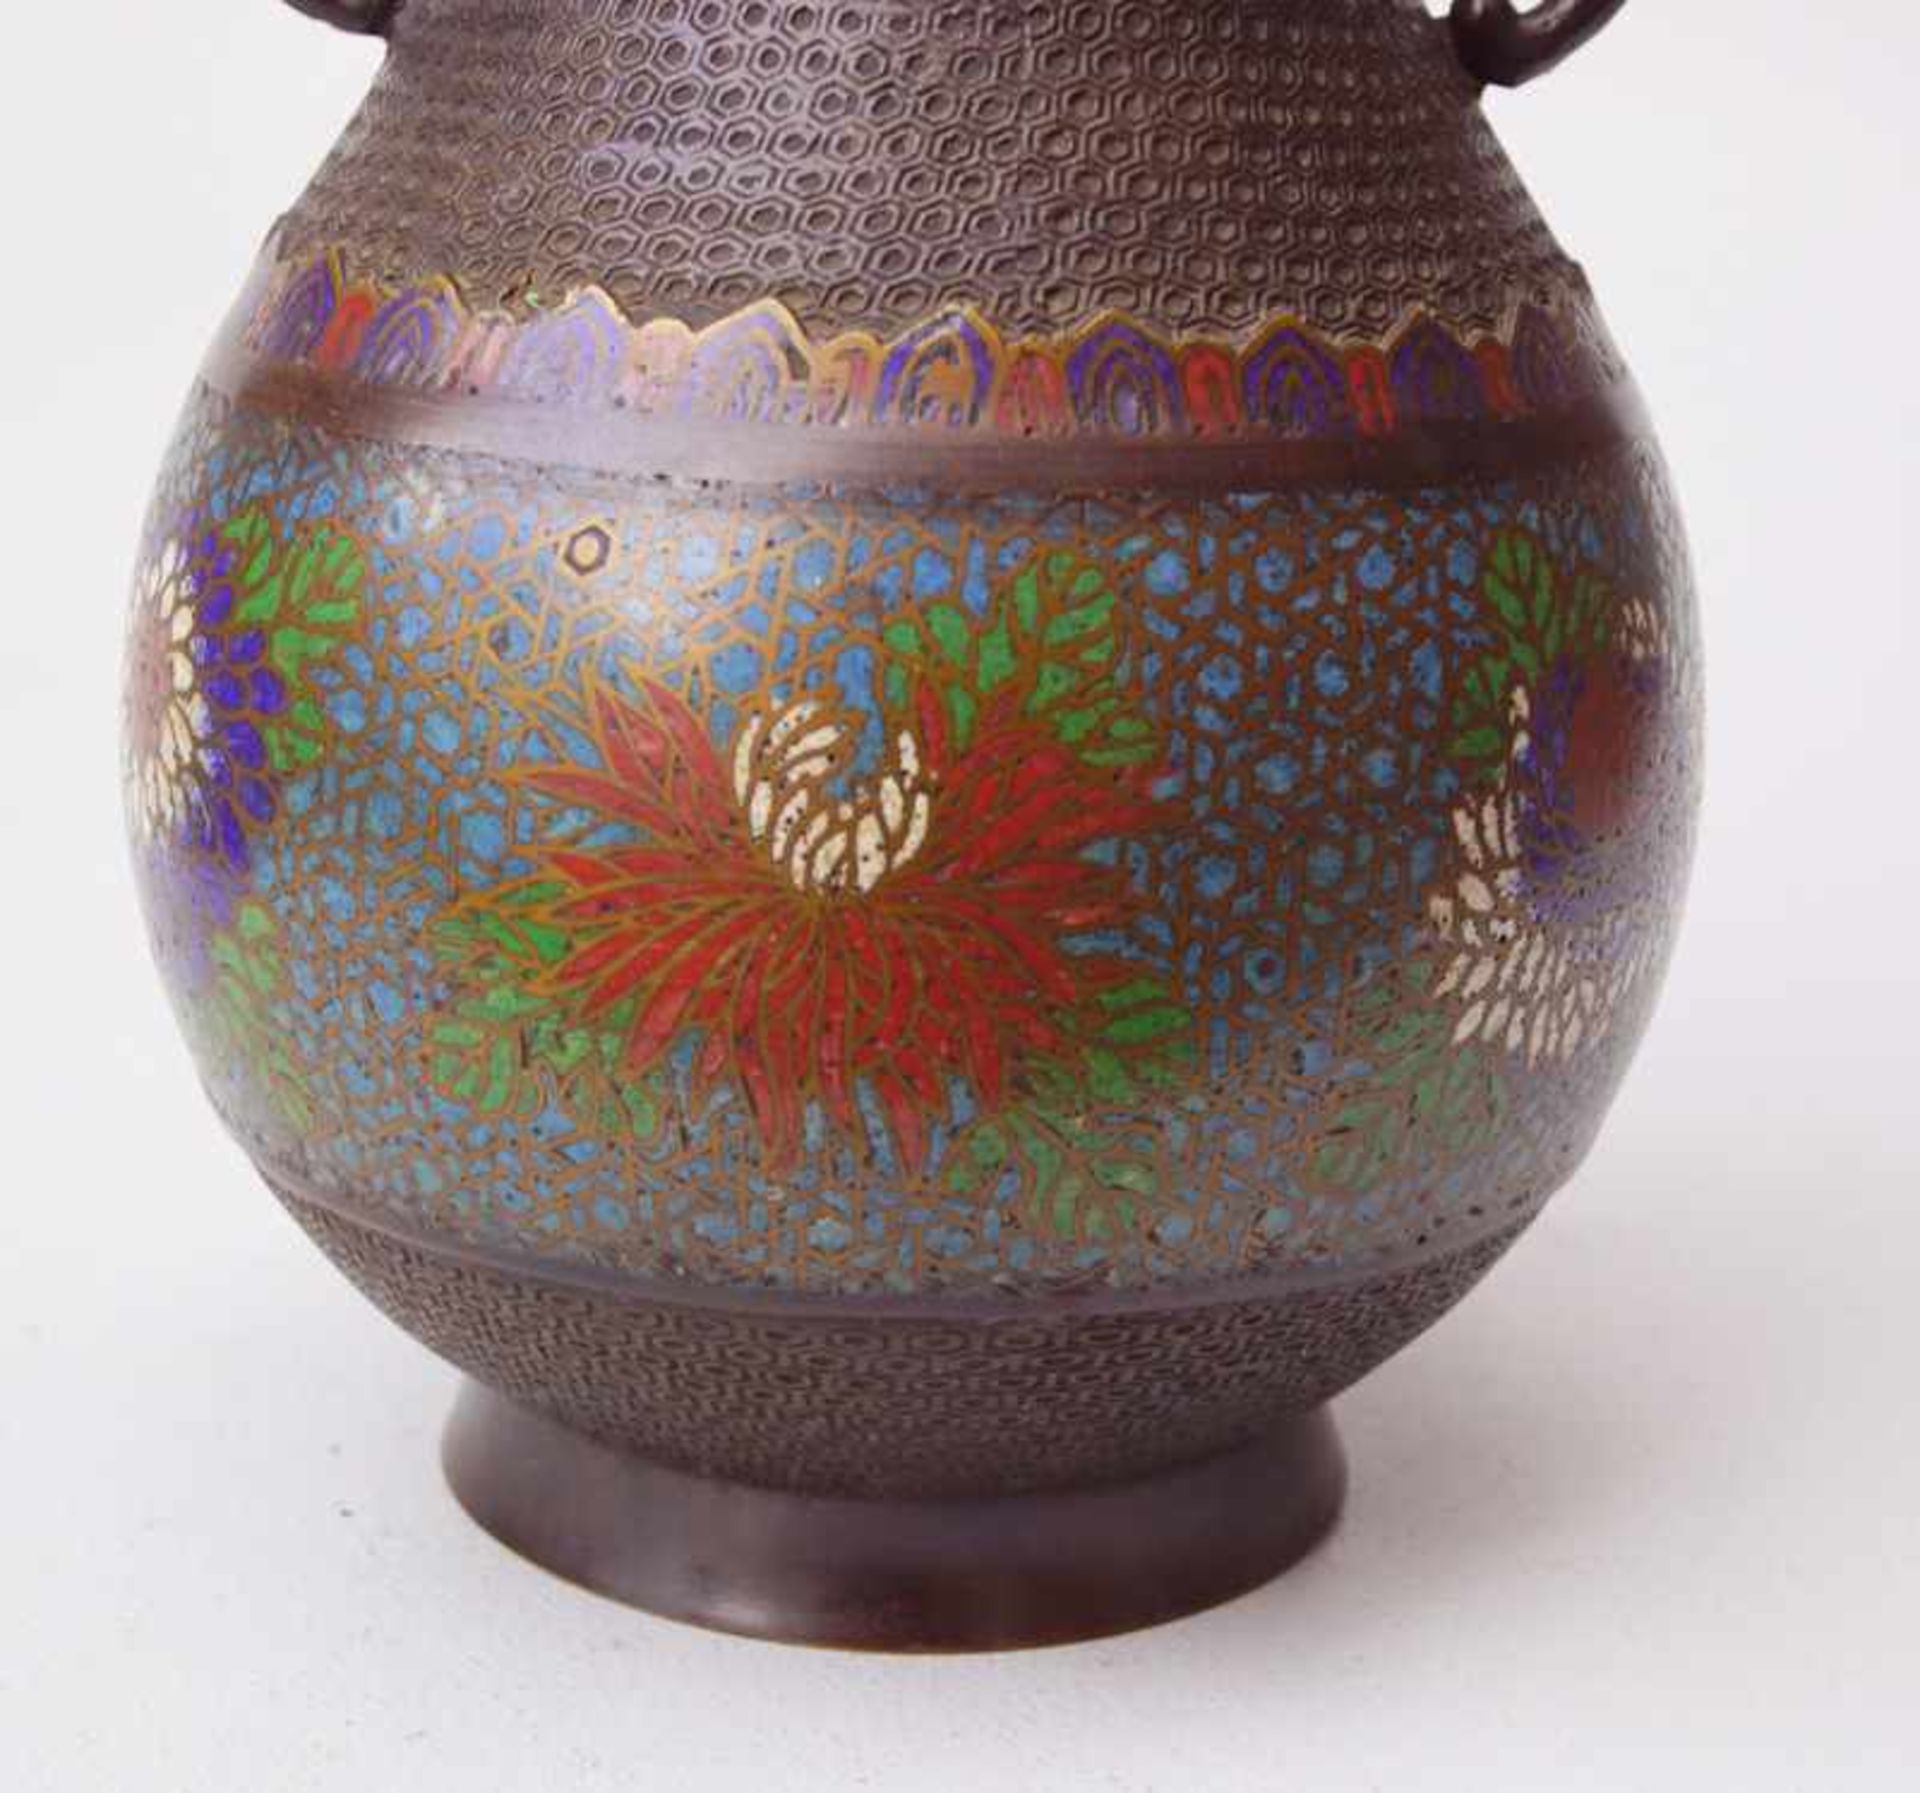 Cloissonnée Vase nach Song Vorbild, Japan, Quianlong< - Image 2 of 2